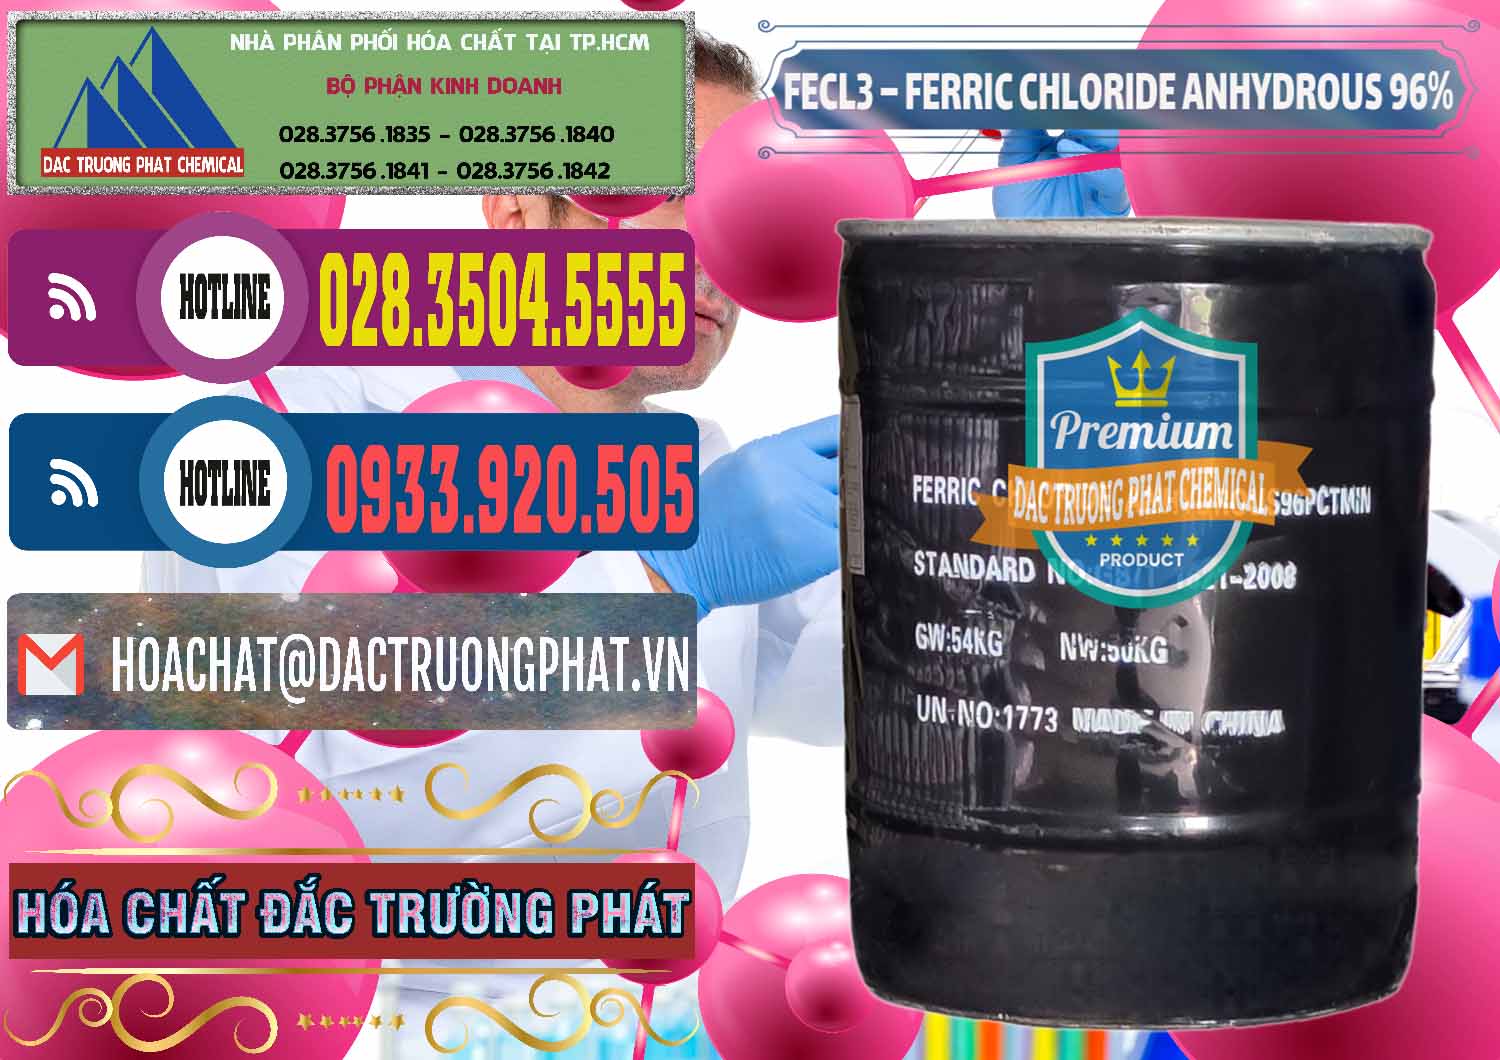 Công ty bán _ cung ứng FECL3 – Ferric Chloride Anhydrous 96% Trung Quốc China - 0065 - Nhà nhập khẩu _ phân phối hóa chất tại TP.HCM - muabanhoachat.com.vn